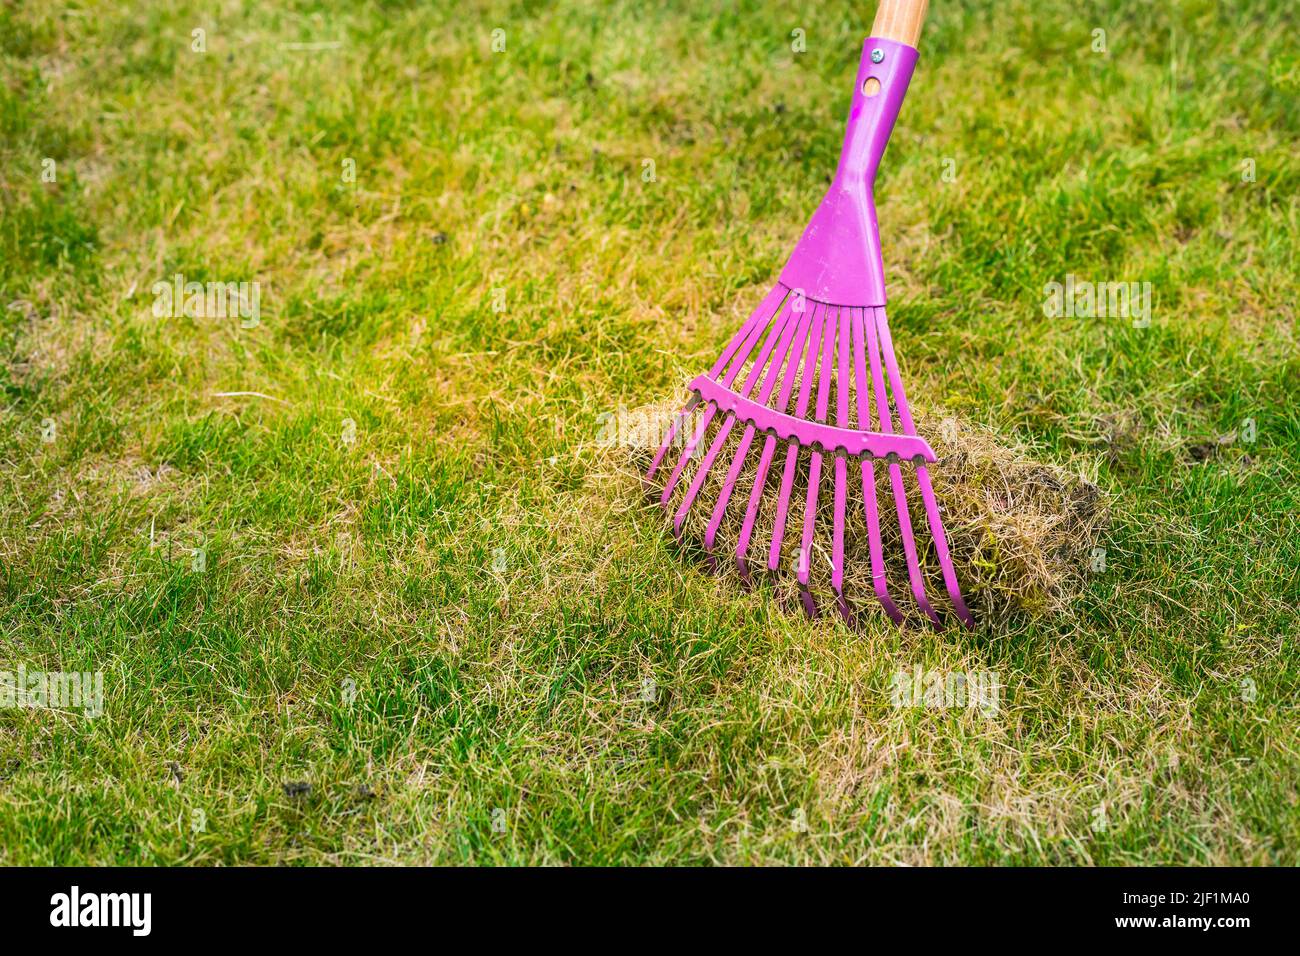 Nettoyage de l'herbe avec un râteau. Aérer et scarifier la pelouse dans le jardin. Améliorer la qualité de la pelouse en éliminant l'herbe et la mousse. Banque D'Images